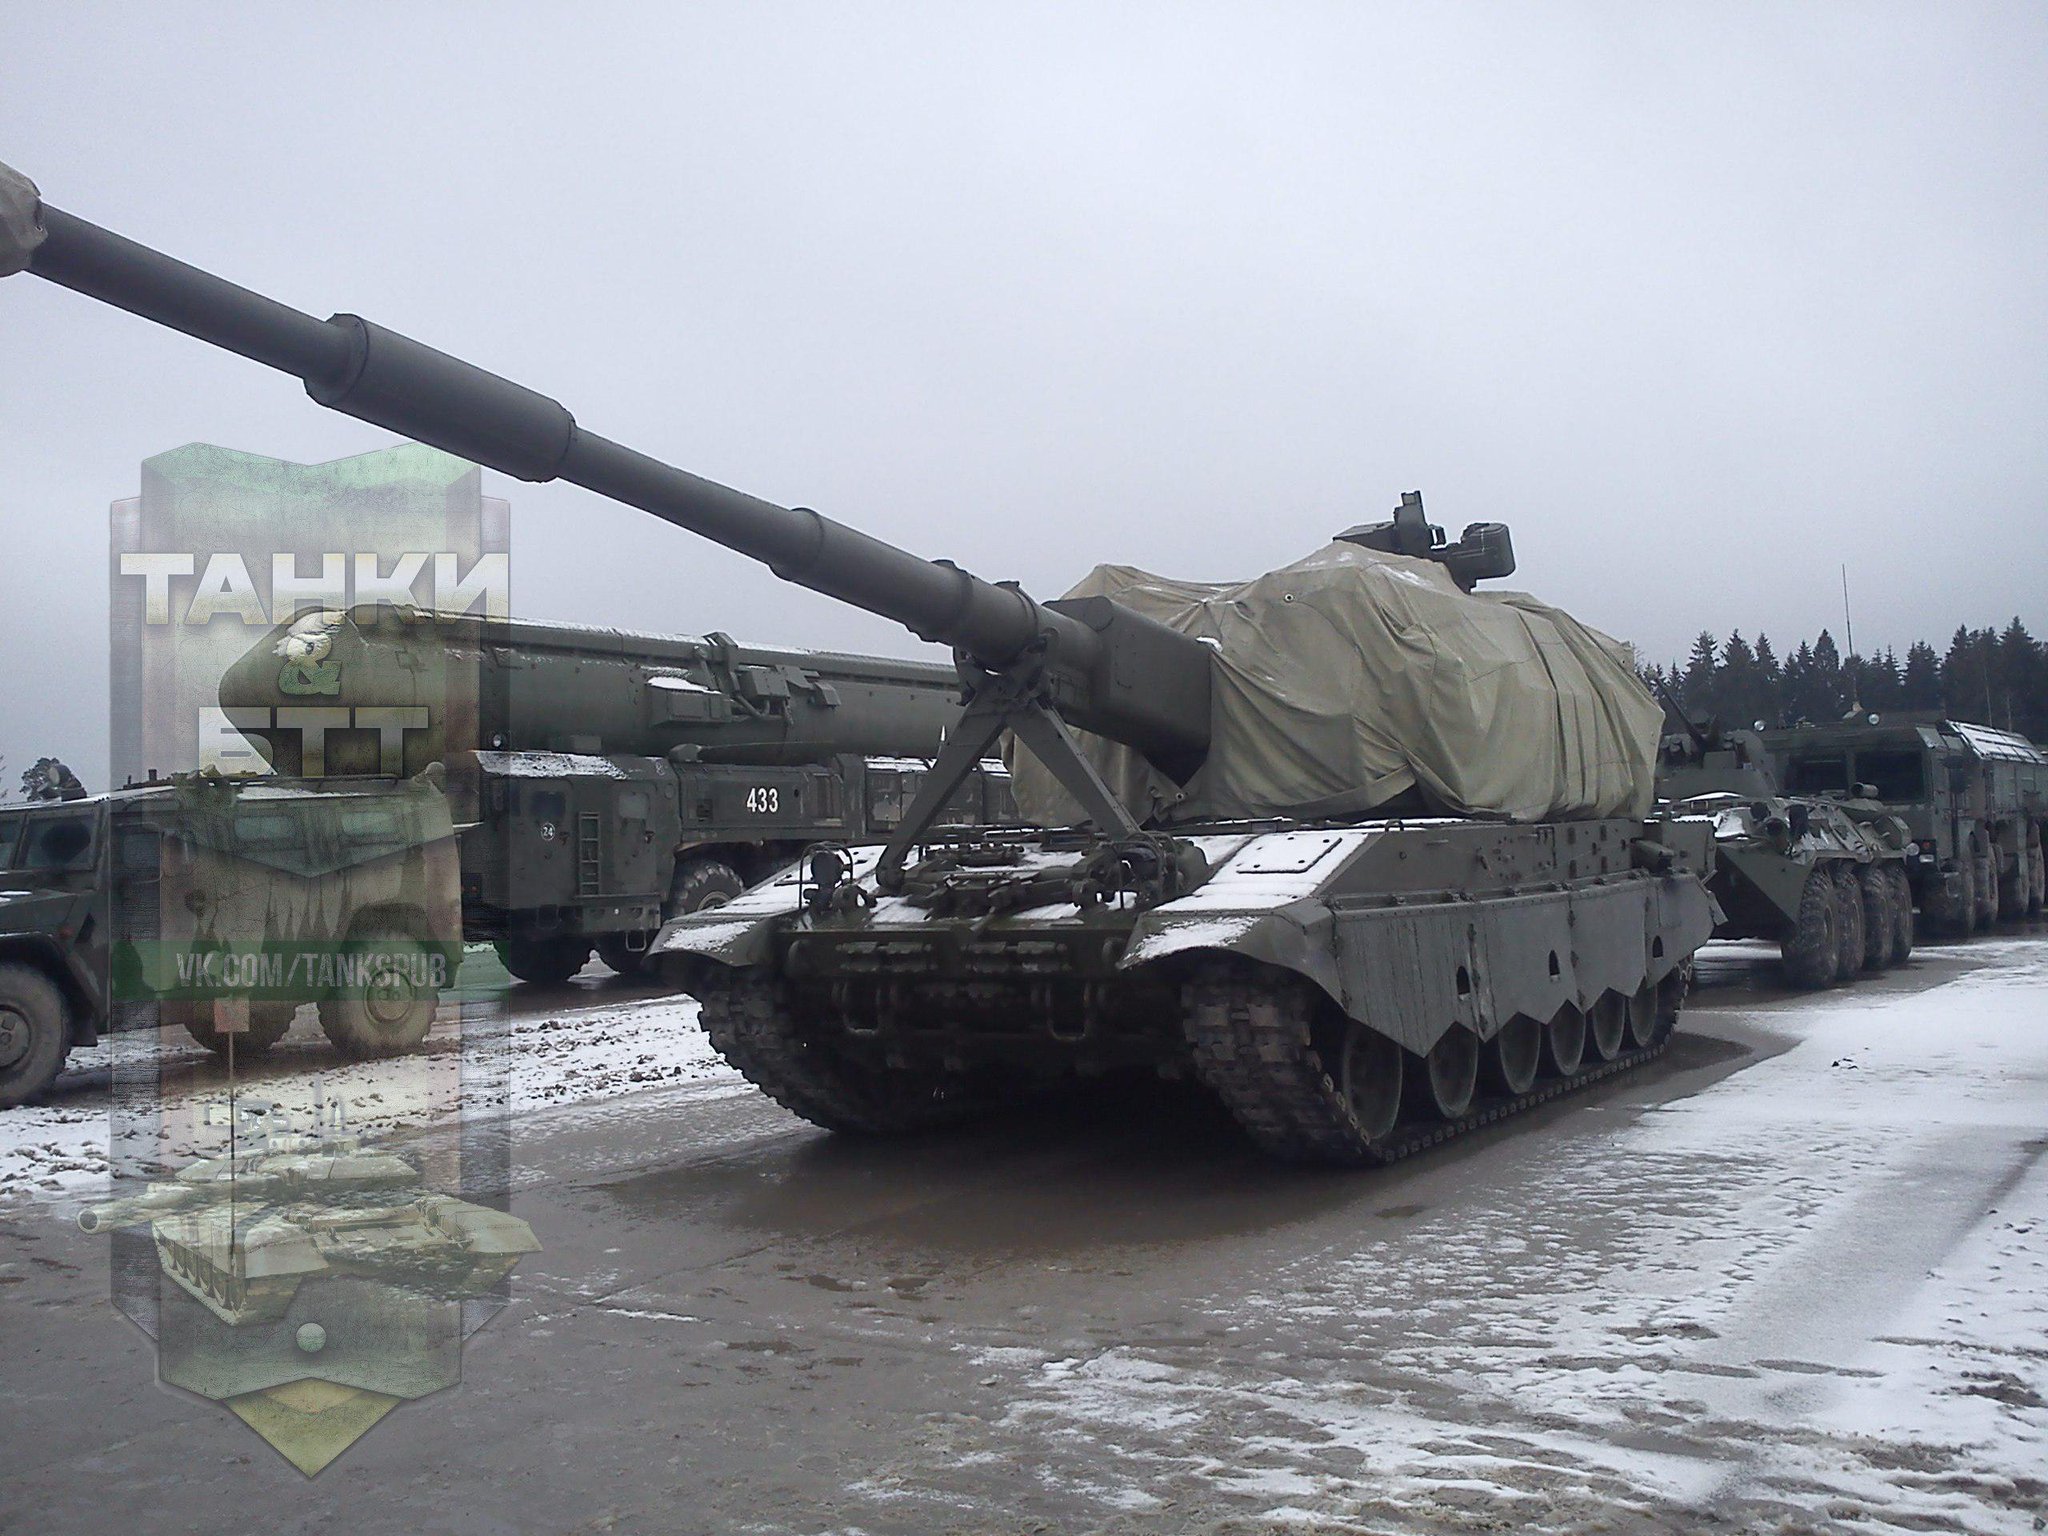 صور لنموذج من مدفع 2S35 Koalitsiya الروسي الذاتي الحركه  CCOHwp7VEAAgi2V